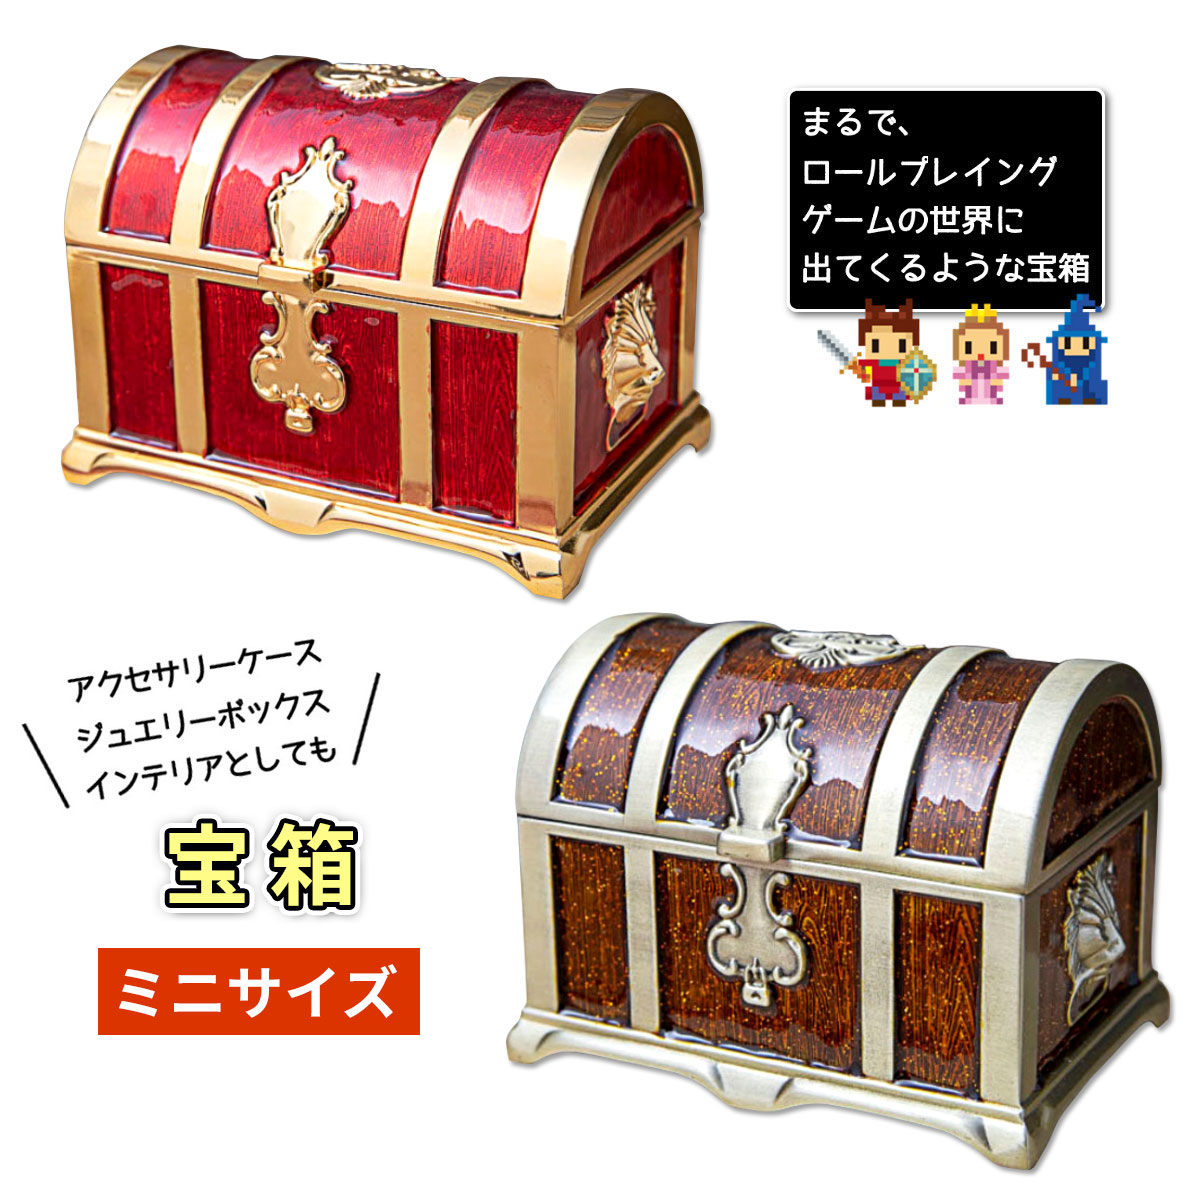 宝箱風 ミニ ジュエリーボックス 宝石箱 アクセサリーケース リングケース 可愛い コンパクトサイズ | e-shop aoakua